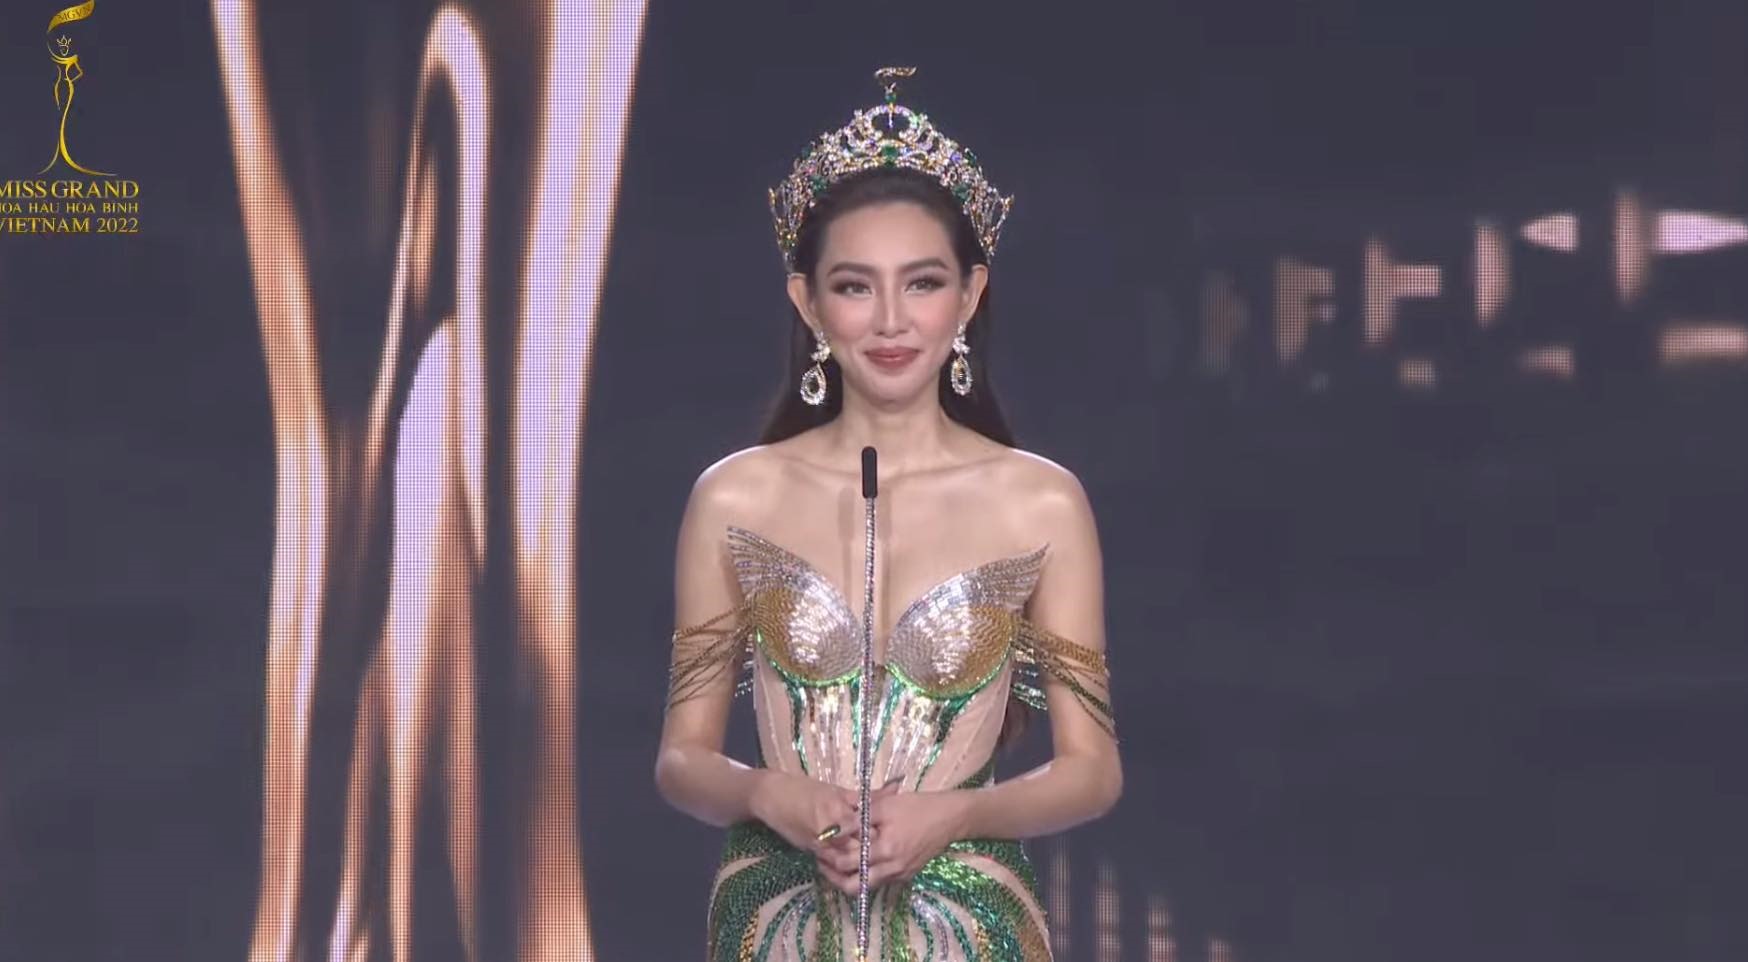 Hoa hậu Thuỳ Tiên chia sẻ cảm xúc tại Miss Grand Vietnam 2022. Ảnh: CMH